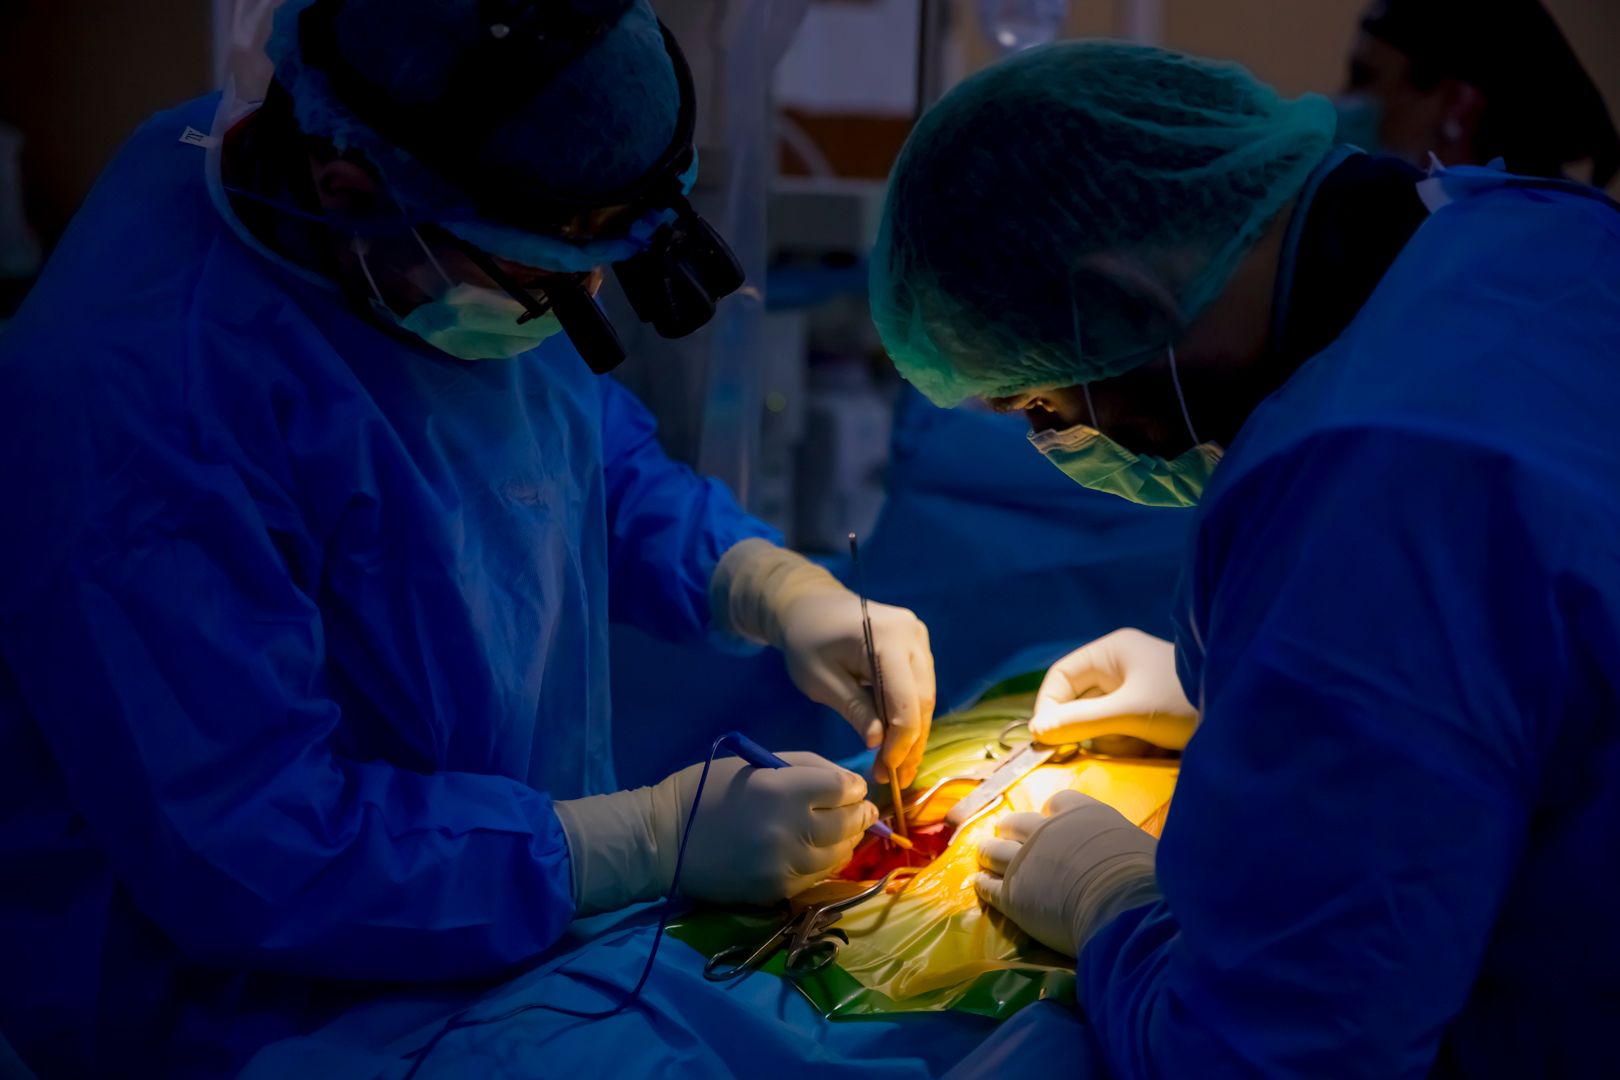 Premieră medicală - Intervenție de implantare de stent aortic la un pacient diagnosticat cu Coarctație de aortă (2)